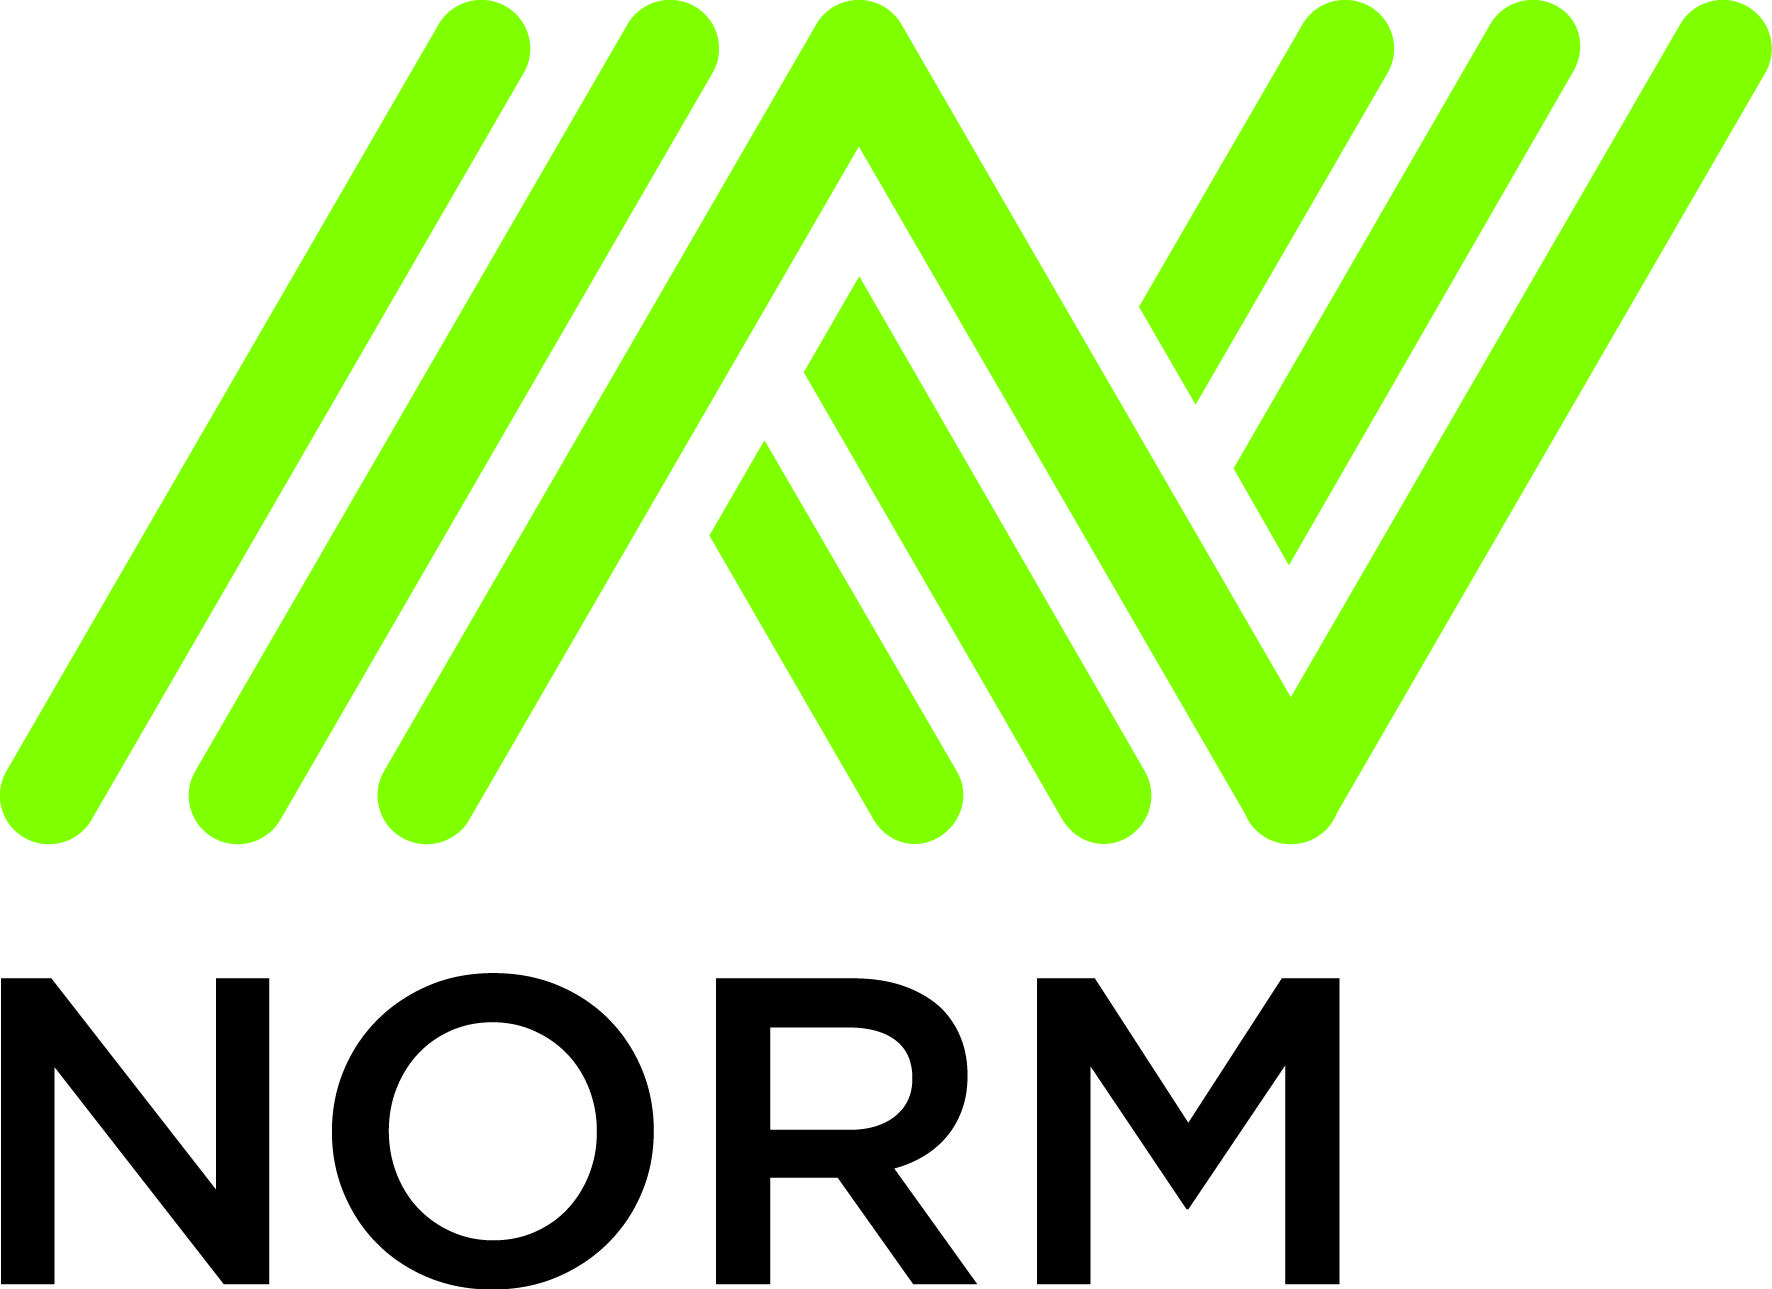 Продукция завода «Norm Sement» отвечает самым высоким европейским экологическим стандартам